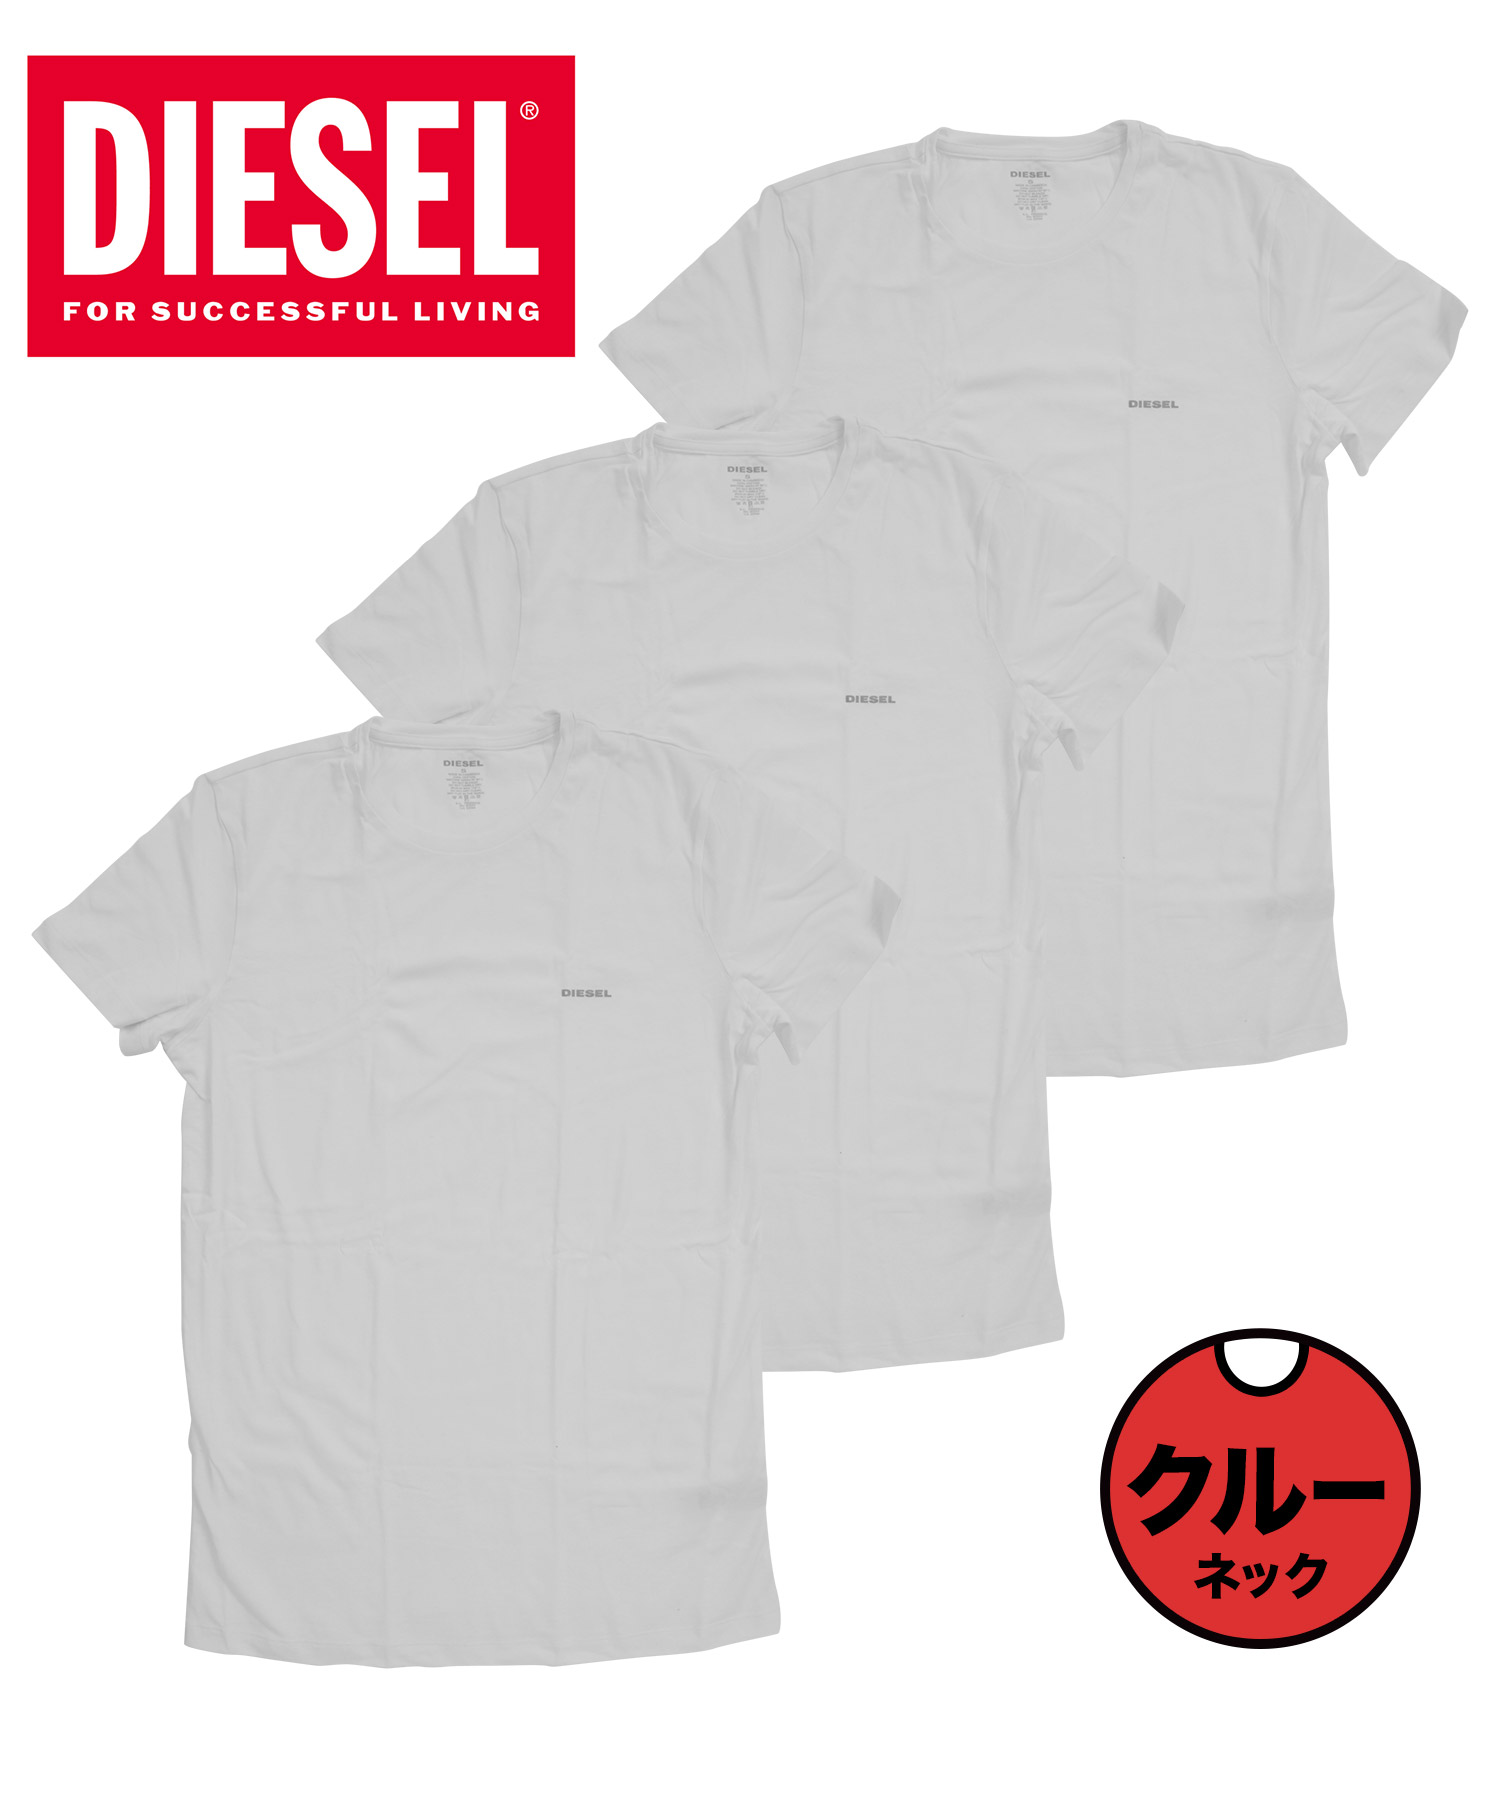 ディーゼル Tシャツ 3枚セット メンズ 肌着 綿100% おしゃれ かっこいい 大きいサイズ ロゴ...